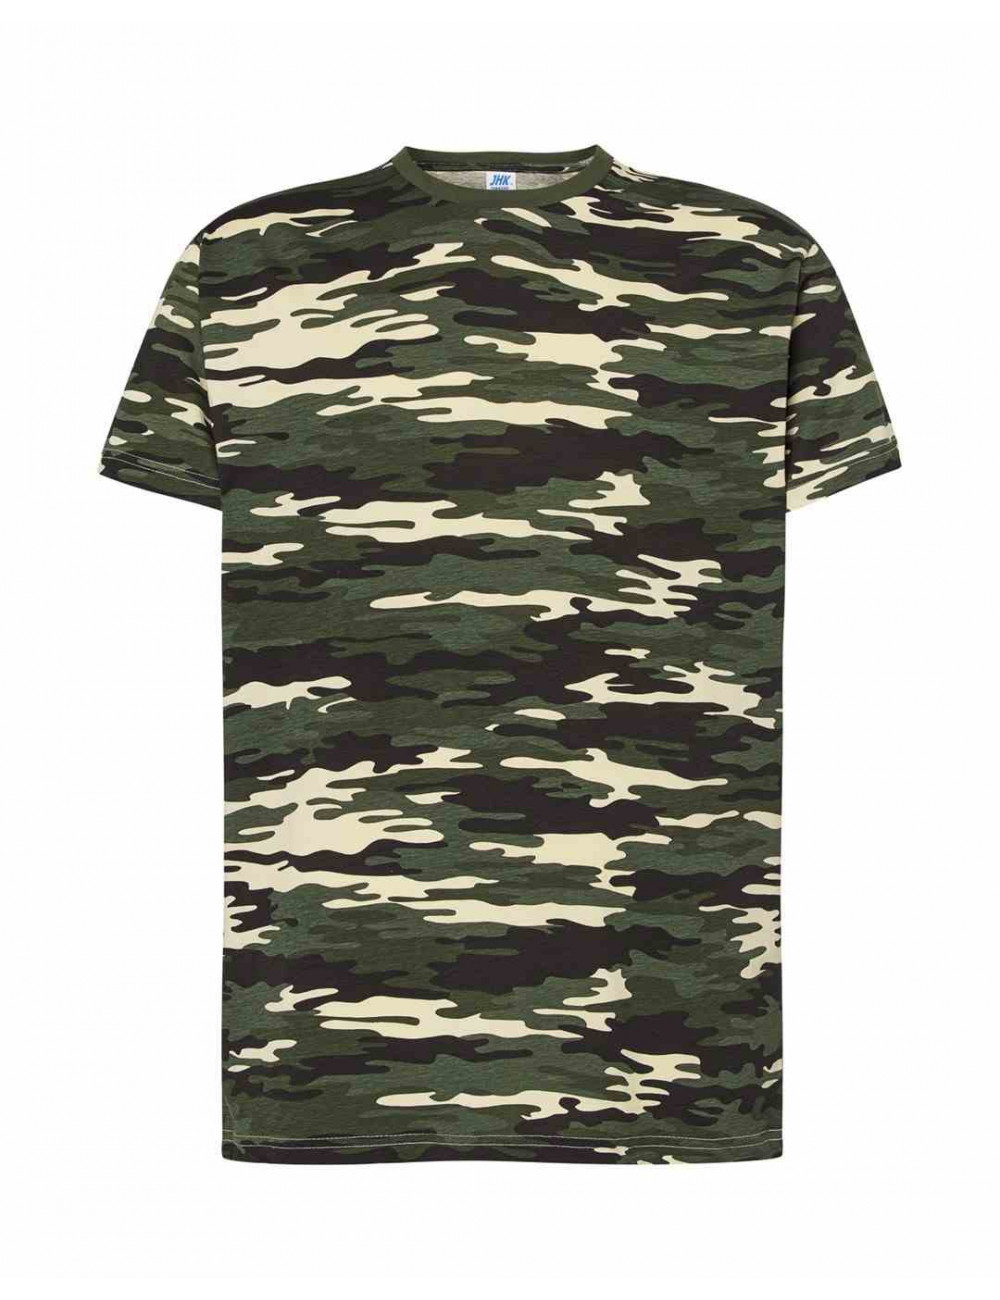 Koszulka męska tsra 150 regular t-shirt cm - camouflage Jhk